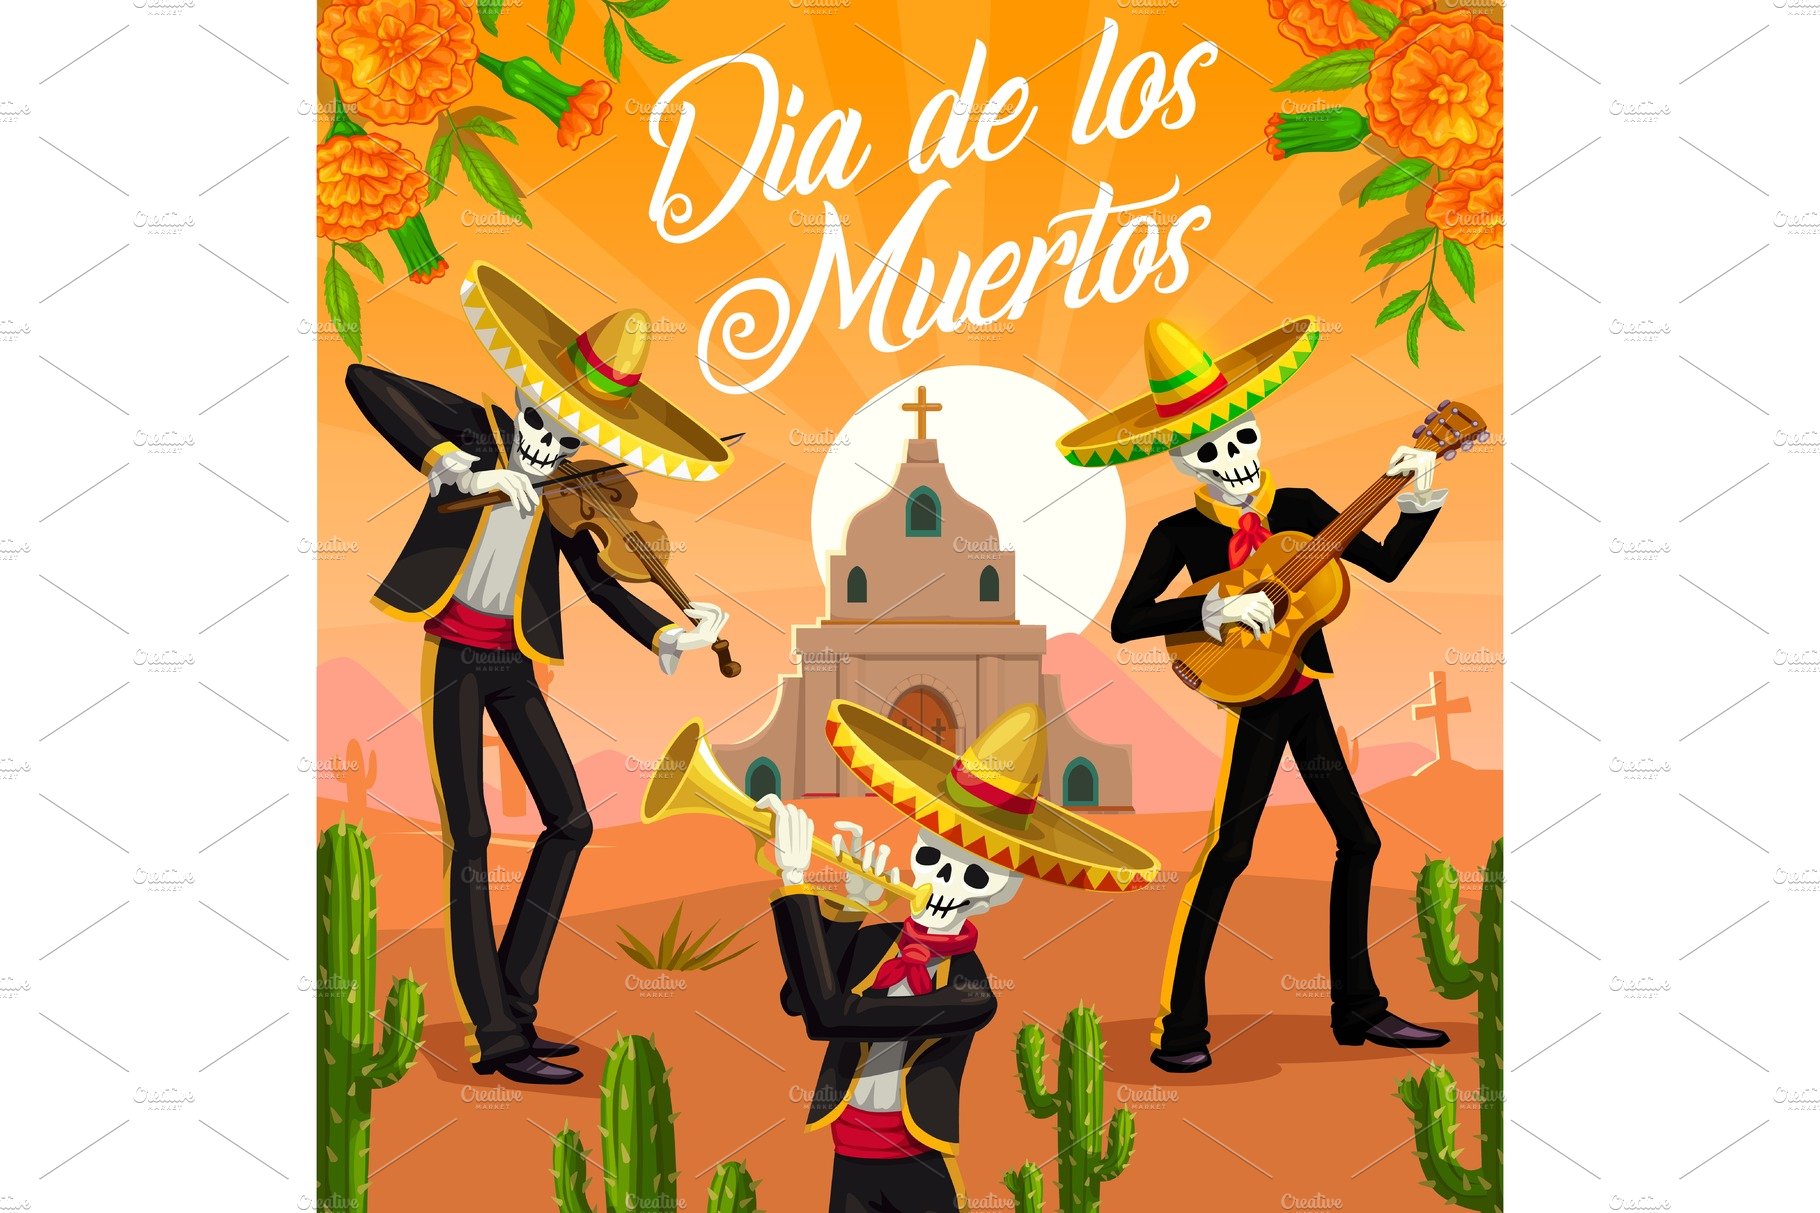 Dia de los Muertos mariachi skeleton cover image.